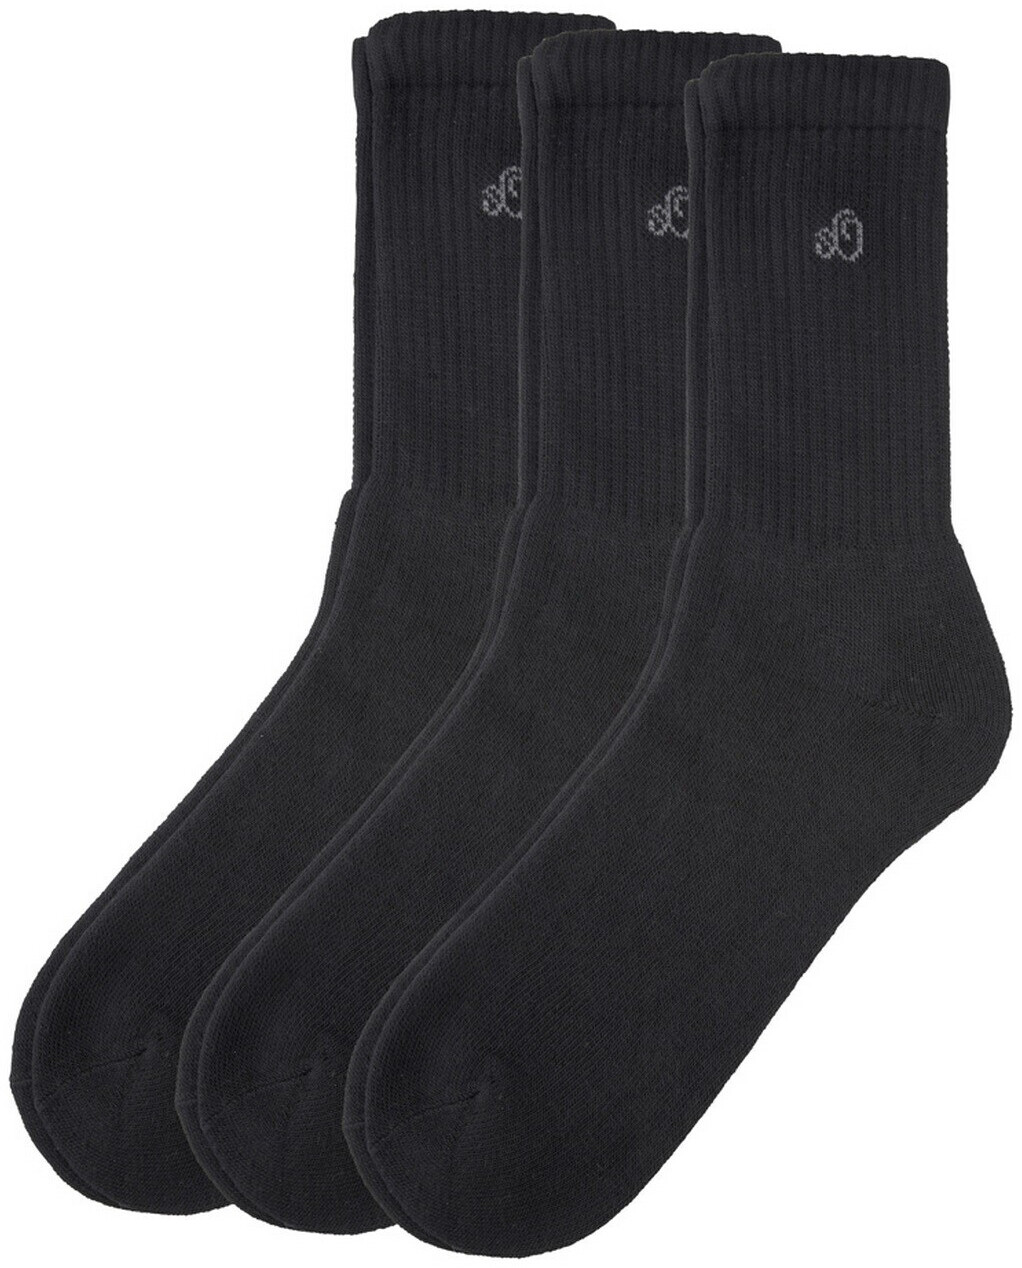 S.Oliver Sport Men Basic Socks 3p (S30001) black ab 7,95 € | Preisvergleich  bei